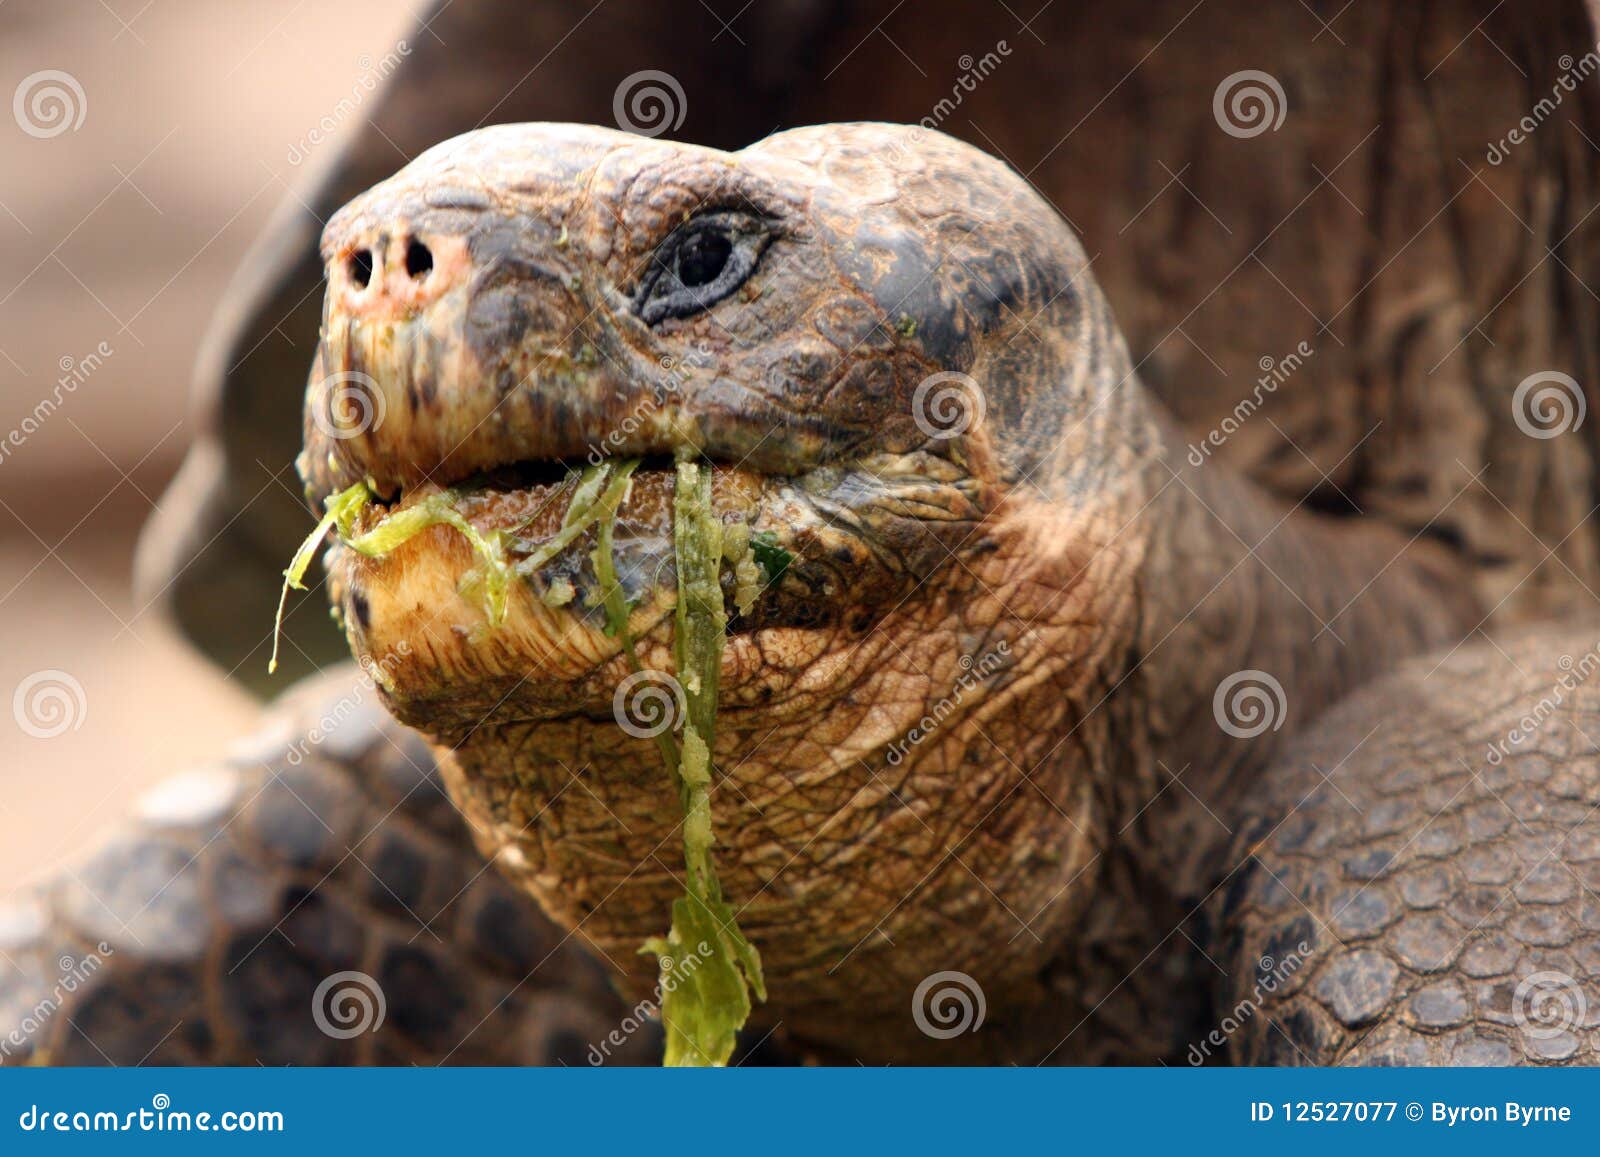 galapagos giant tortoise eats messily